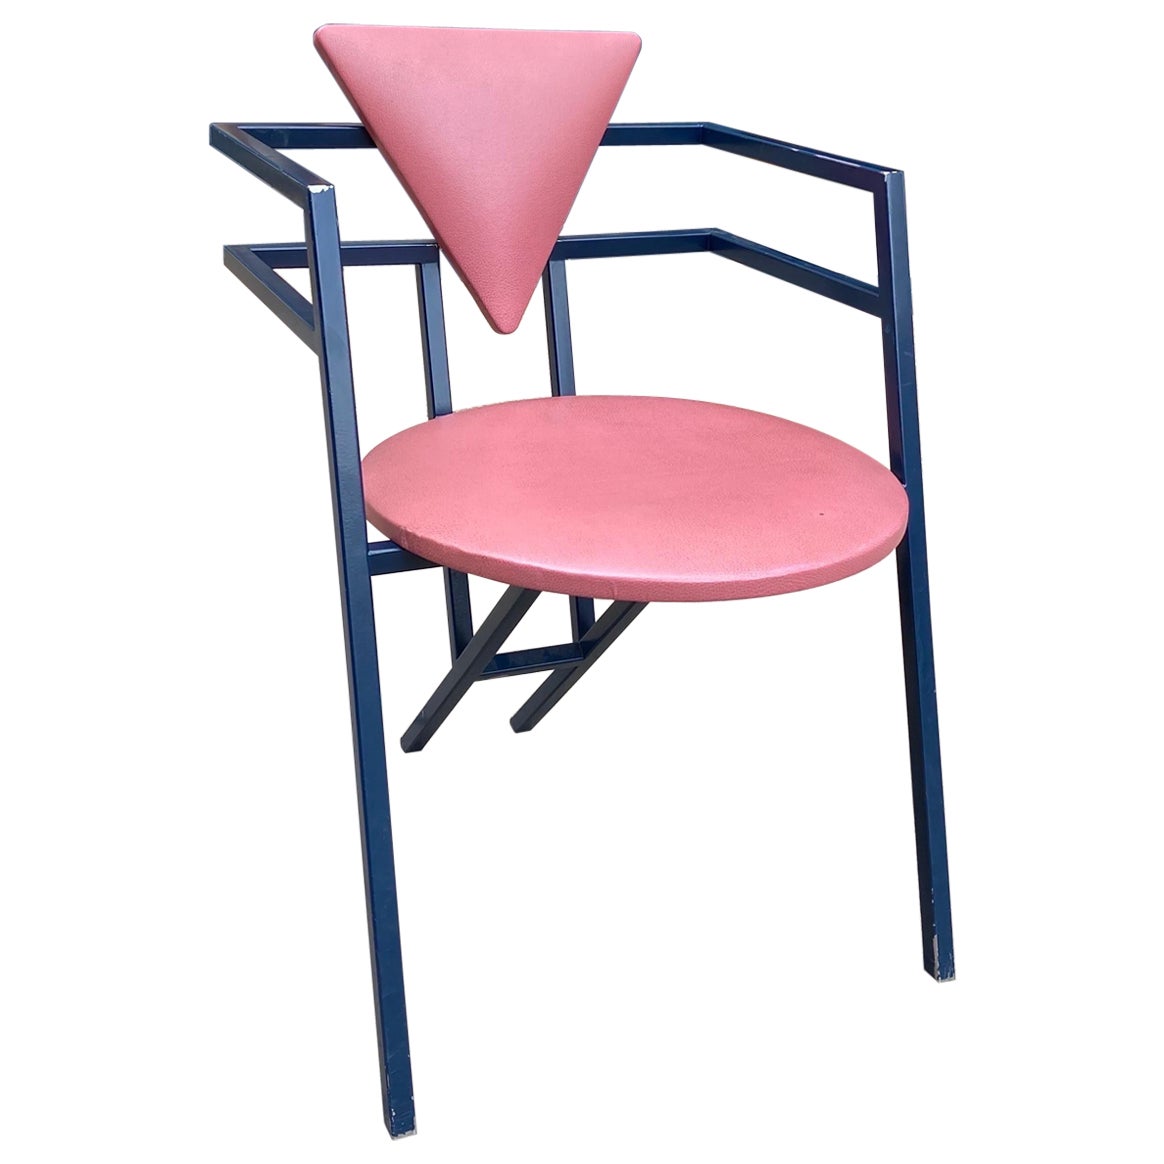 1 Druillet Postmodern 1980s Blue Pink Dining Chair Jean Allemand Vintage Desk